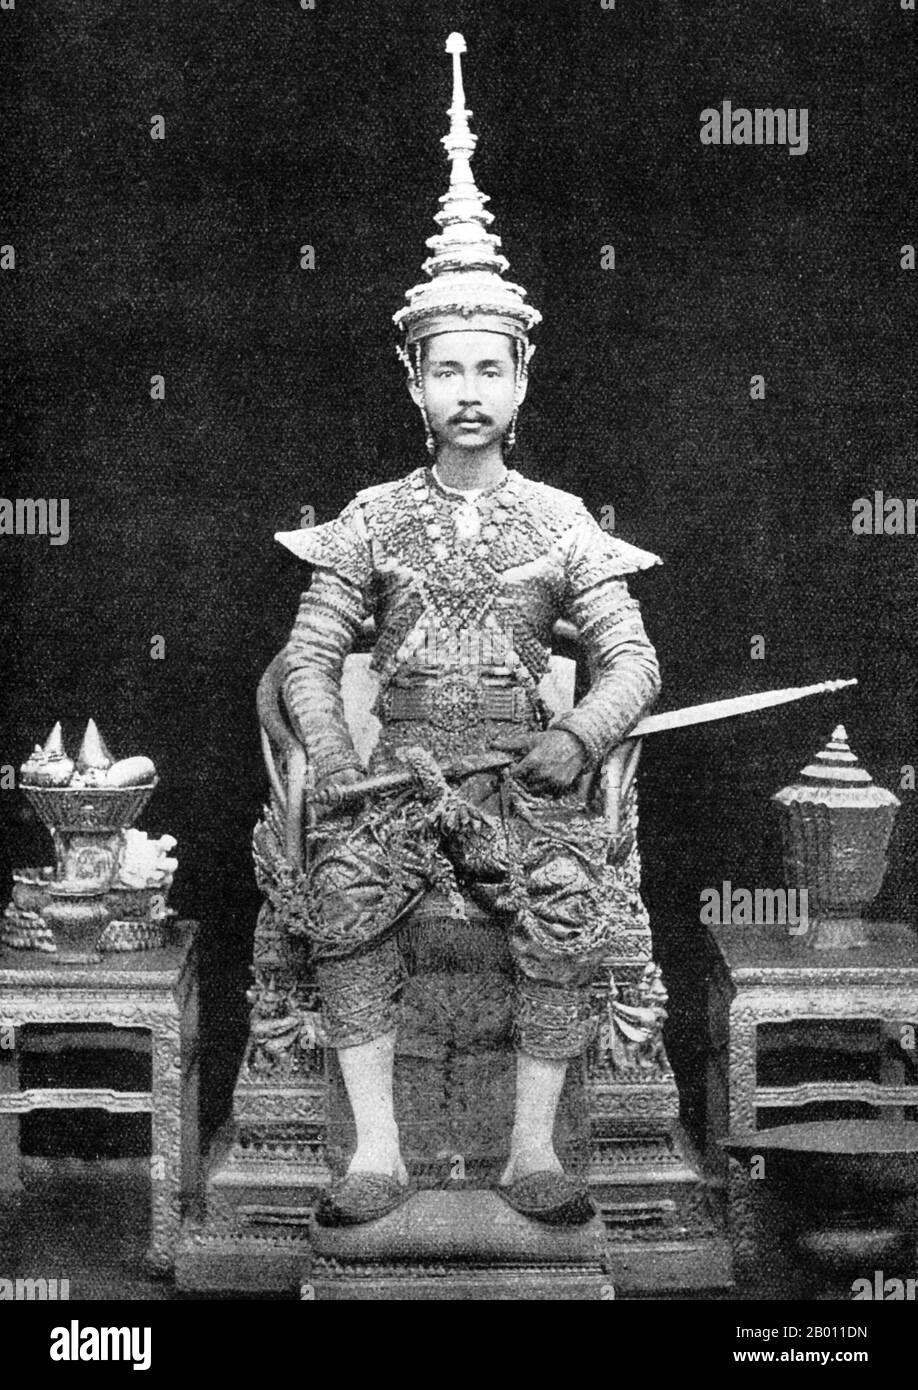 Thaïlande: Le roi Chulalongkorn est assis sur son trône vêtu de ses robes de couronnement, c. 1880. Le roi Chulalongkorn, Rama V (1853–1910) était le cinquième monarque de Siam sous la Maison de Chakri. Il accède au trône à l'âge de 15 ans après la mort de son père, le roi Mongkut, Rama IV Le roi Chulalongkorn est considéré comme l'un des plus grands rois de Siam. Son règne a été caractérisé par la modernisation du pays, y compris des réformes gouvernementales et sociales majeures. On lui attribue également le mérite d'avoir sauvé Siam d'être colonisé. Banque D'Images